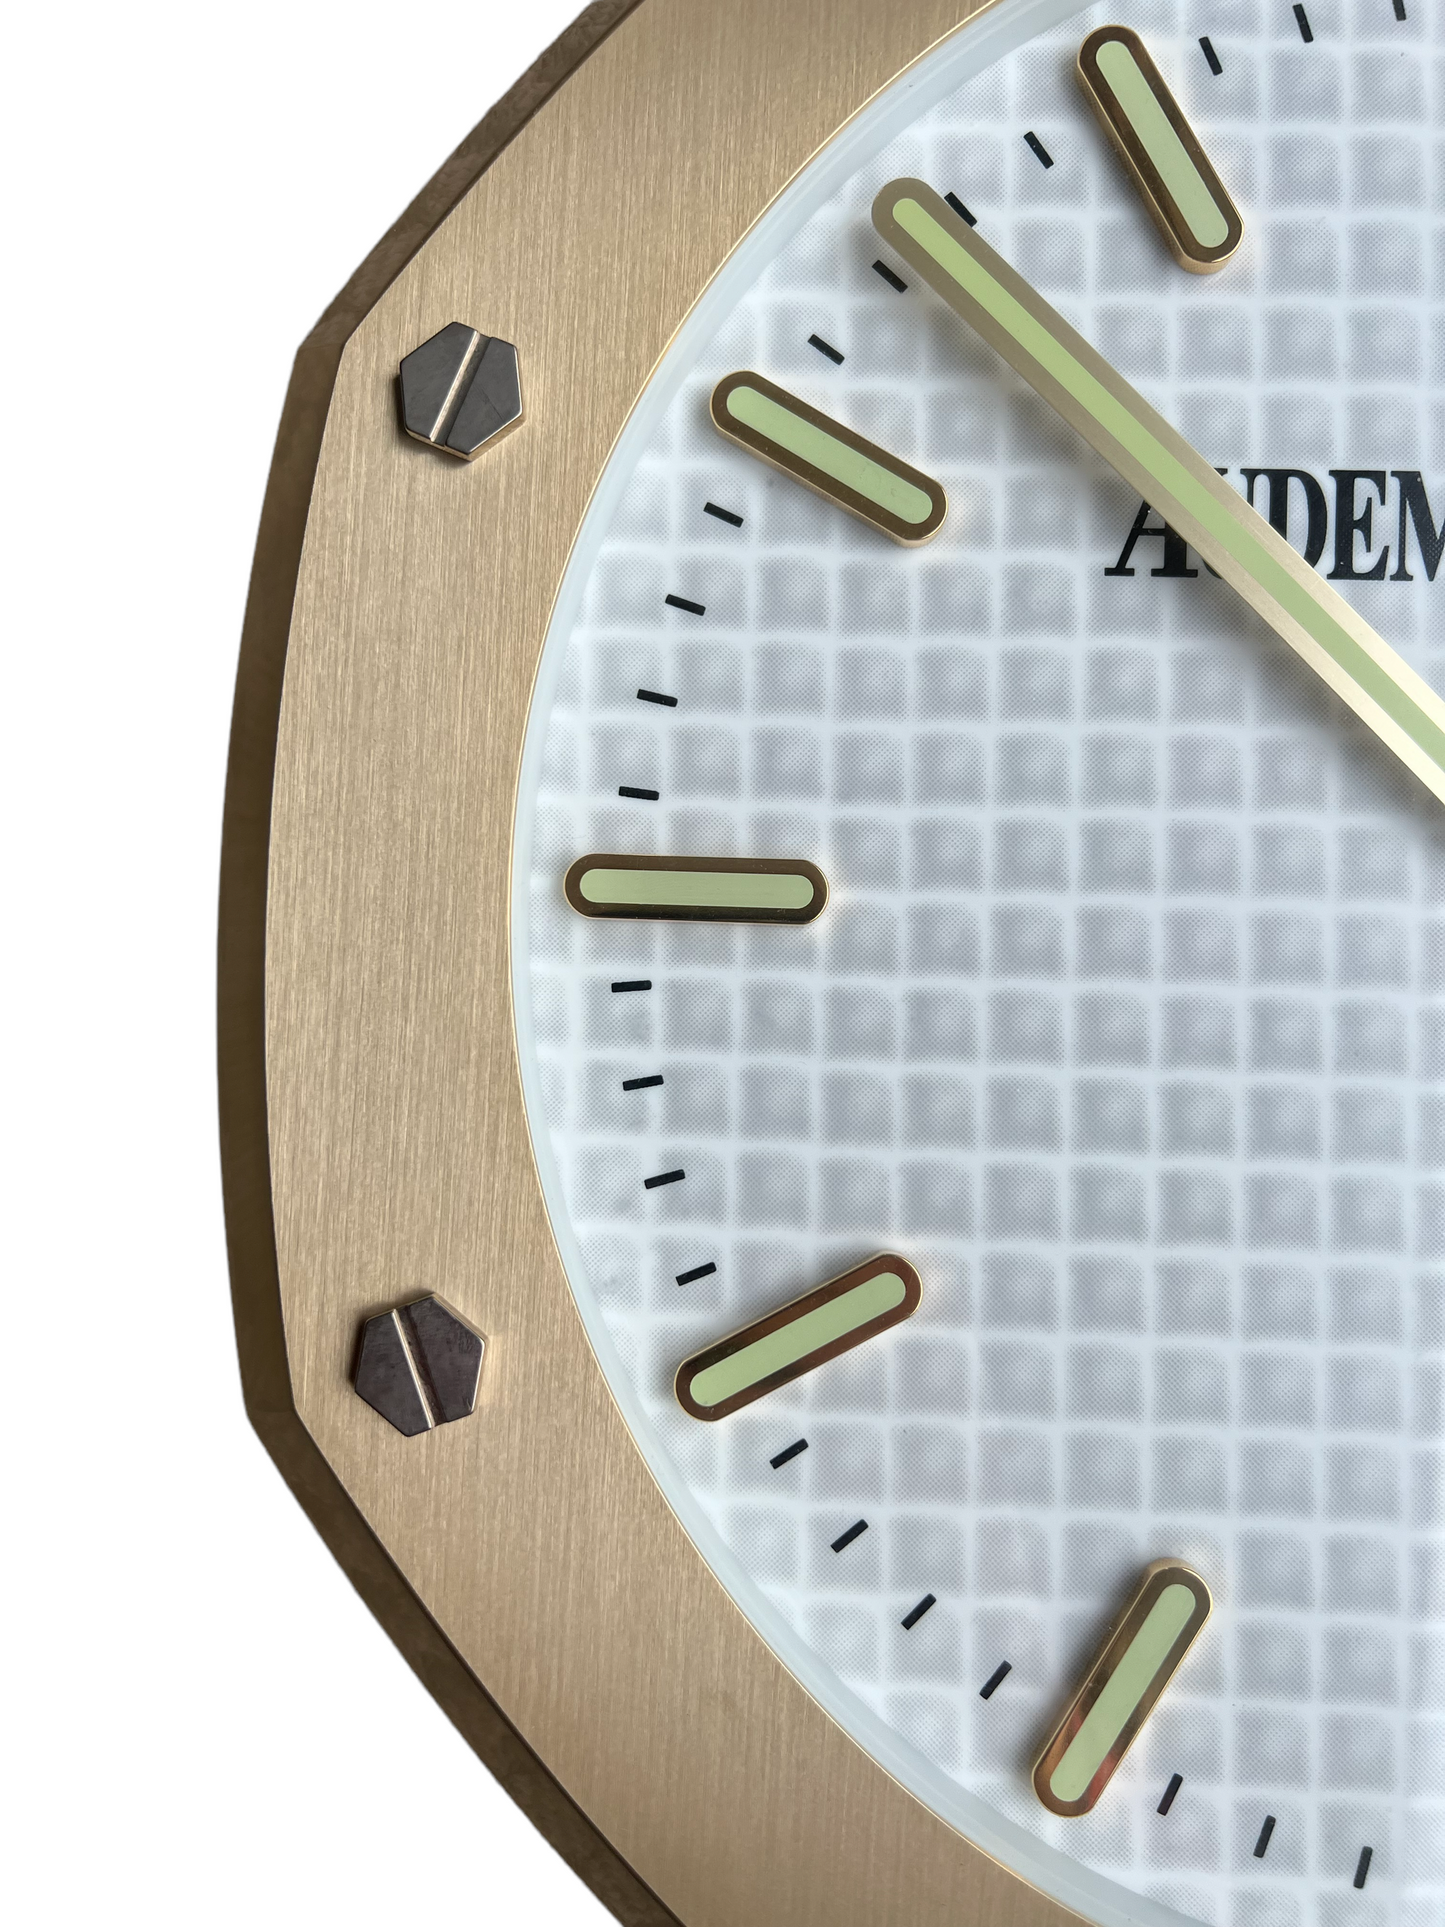 Audemars Piguet Official Retailer's Royal Oak Wall Clock Big Model 42cm